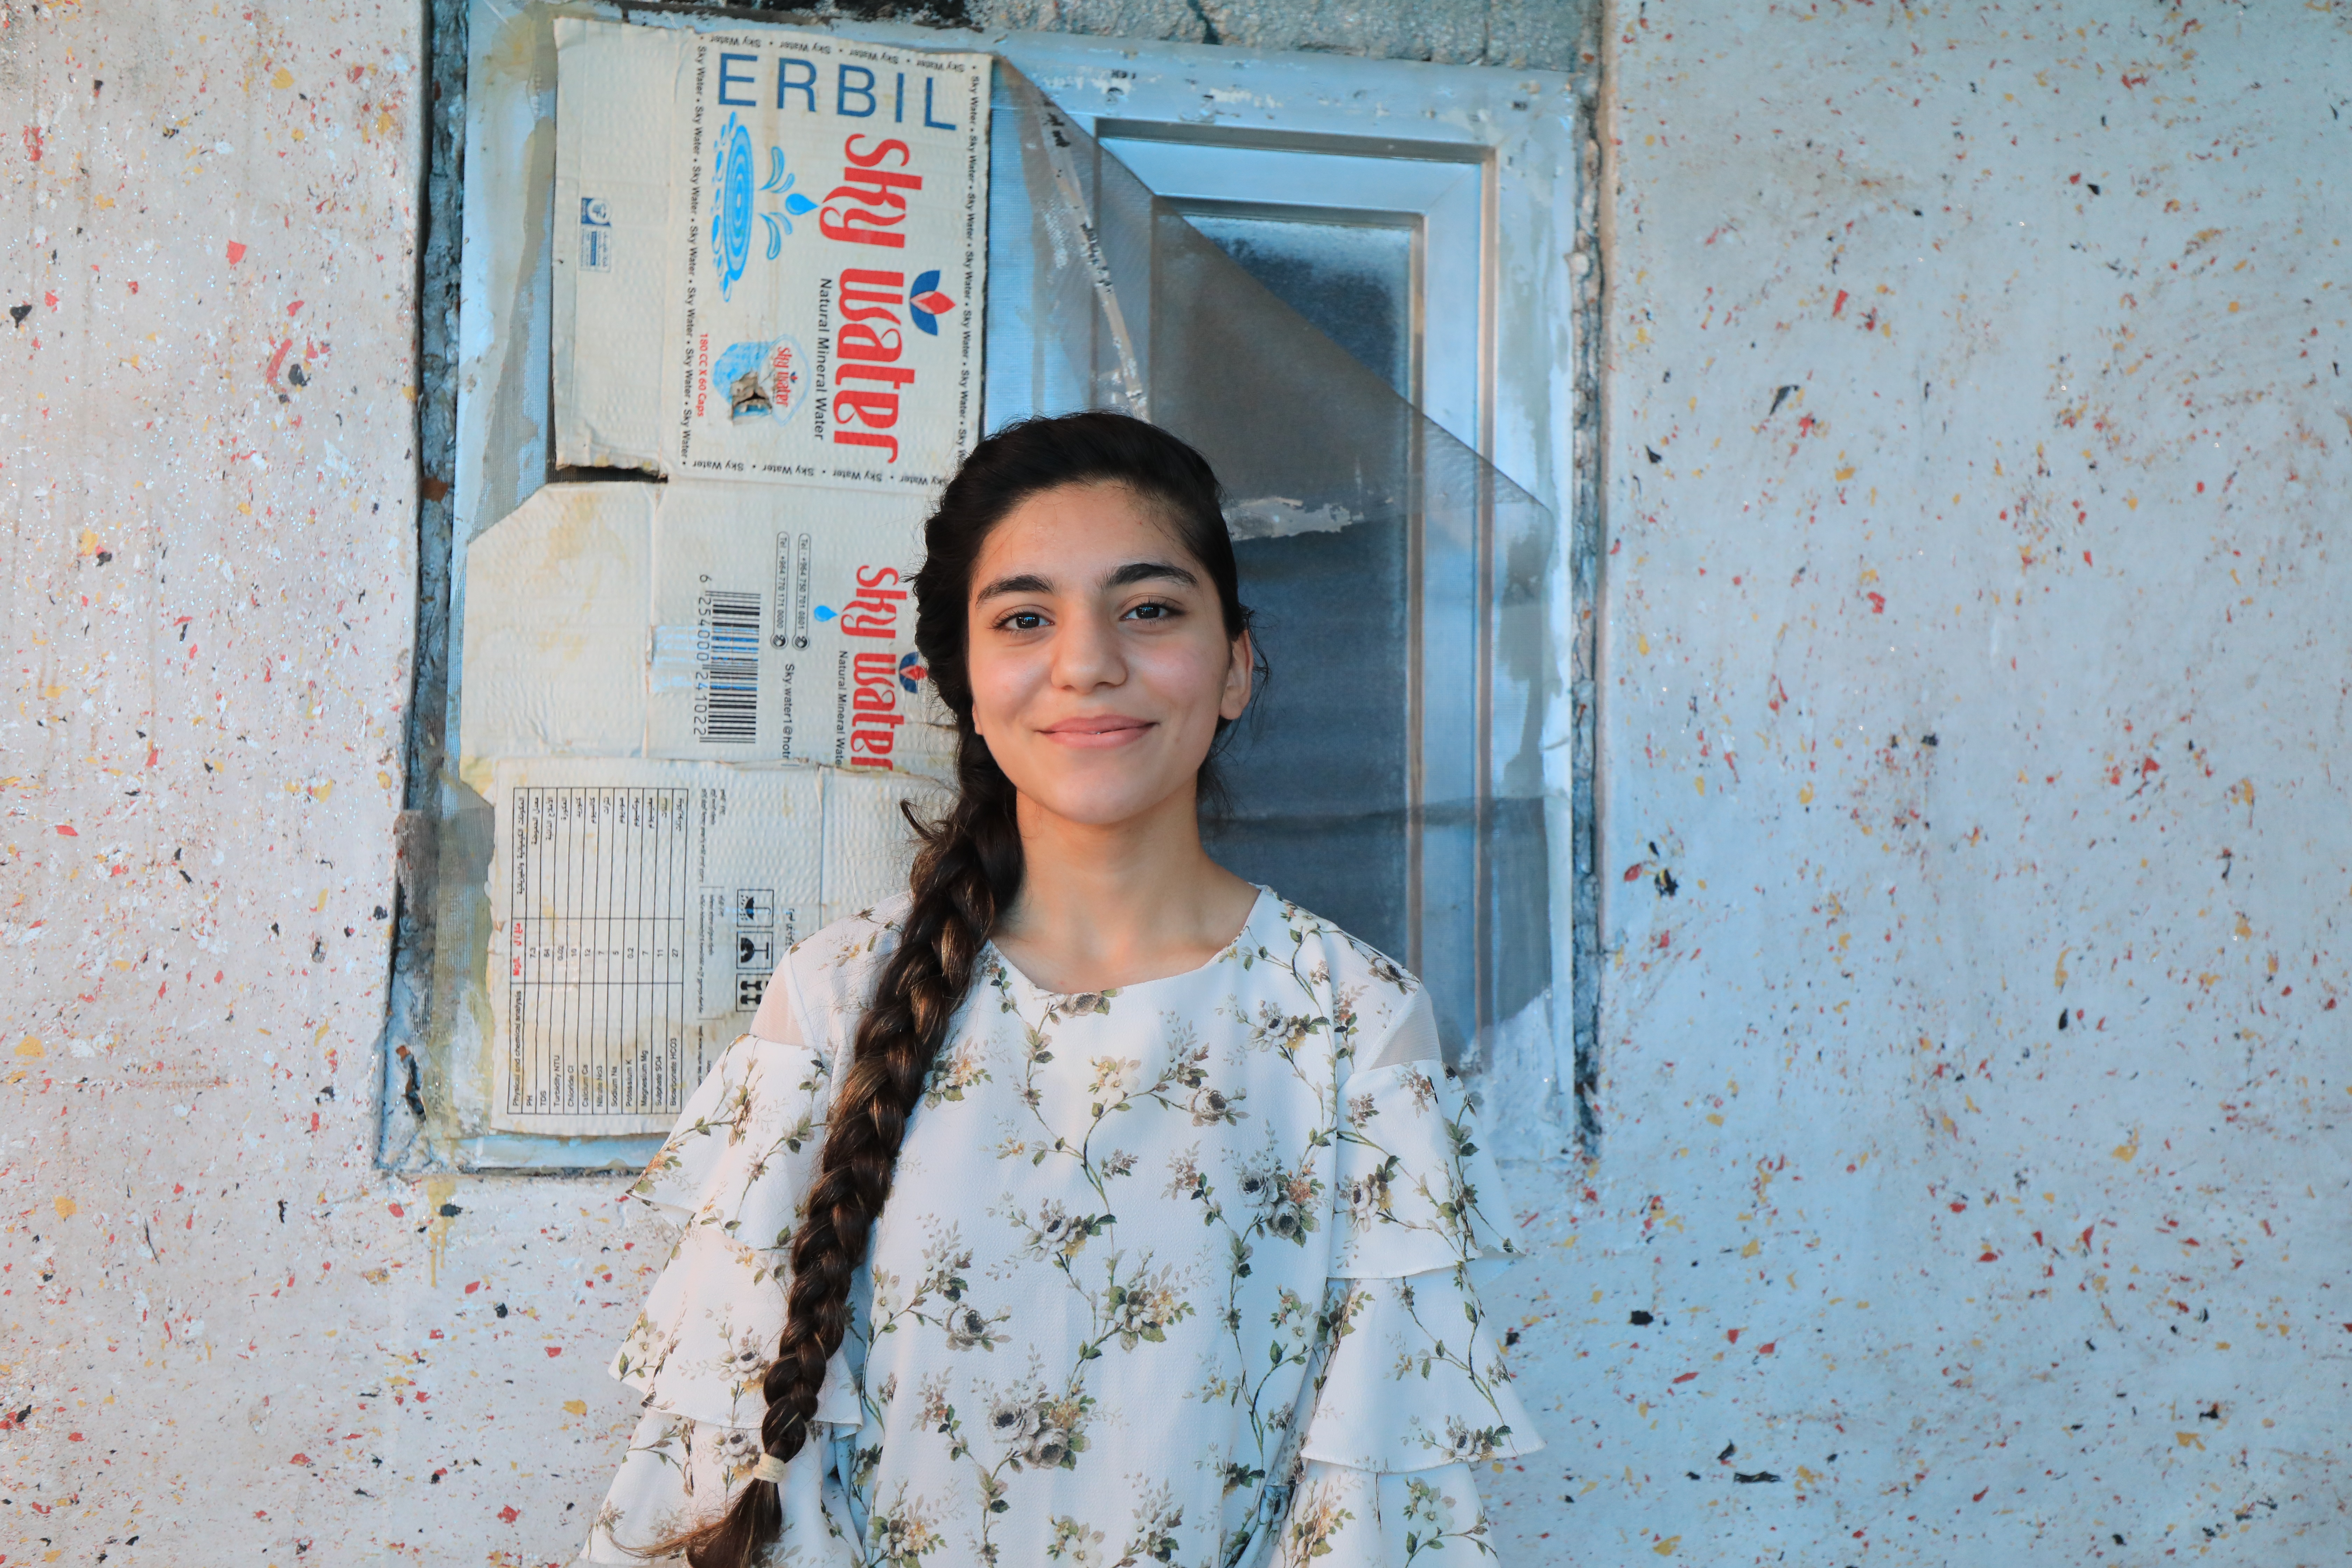 Qushtapa. Peyman ma 17 lat. Jest Kurdyjką z Syrii. Imię, które nosi oznacza w „zgoda” albo „obietnica’. „Zgoda” pasuje lepiej, bo Peyman dziewczyna pogodziła się ze swym wyjątkowo podłym losem. W obozie mieszka wraz z matką – to ona ją utrzymuje. Pracuje od czternastego roku życia. Ostatnio w fabryce jogurtu w sąsiednim mieście. Praca zajmuje jej po 8-10 godzin dziennie plus dojazdy, nie ma więc czasu by się uczyć. Zresztą nawet gdyby poszła do szkoły, to musiałaby zacząć od zera, bo ledwie duka po arabsku, zaś w języku kurdyjskim, którego naucza się w obozowej szkole, tylko mówi. Peyman straciła ojca i dwie siostry, z których jedna była jej bliźniaczką, podczas ucieczki z Efrin do Aleppo. Rodzina została po prostu brutalnie rozdzielona przez żołnierzy. Peyman nie pamięta, czy byłą to armia Assada czy rebelianci. Po ojcu słuch zaginął – najpewniej został zabity. Siostry spotkał lepszy los. Jedna odnalazła się po latach w USA – okazało się, że zaadoptowała ją jakaś amerykańska rodzina. Druga odezwała się z Niemiec, gdzie ściągnął ją w ramach łączenia rodzin poślubiony w międzyczasie Kurd. Peyman utrzymuje kontakt z sistrami za pomocą mediów społecznościowych. Bardzo chciałaby się z nimi zobaczyć, ale jedynym dokumentem jaki posiada, jest syryjski aktu urodzenia. To za mało, by dostać nawet prawo do pobytu w Iraku, nie mówiąc już o paszporcie czy zagranicznej wizie.